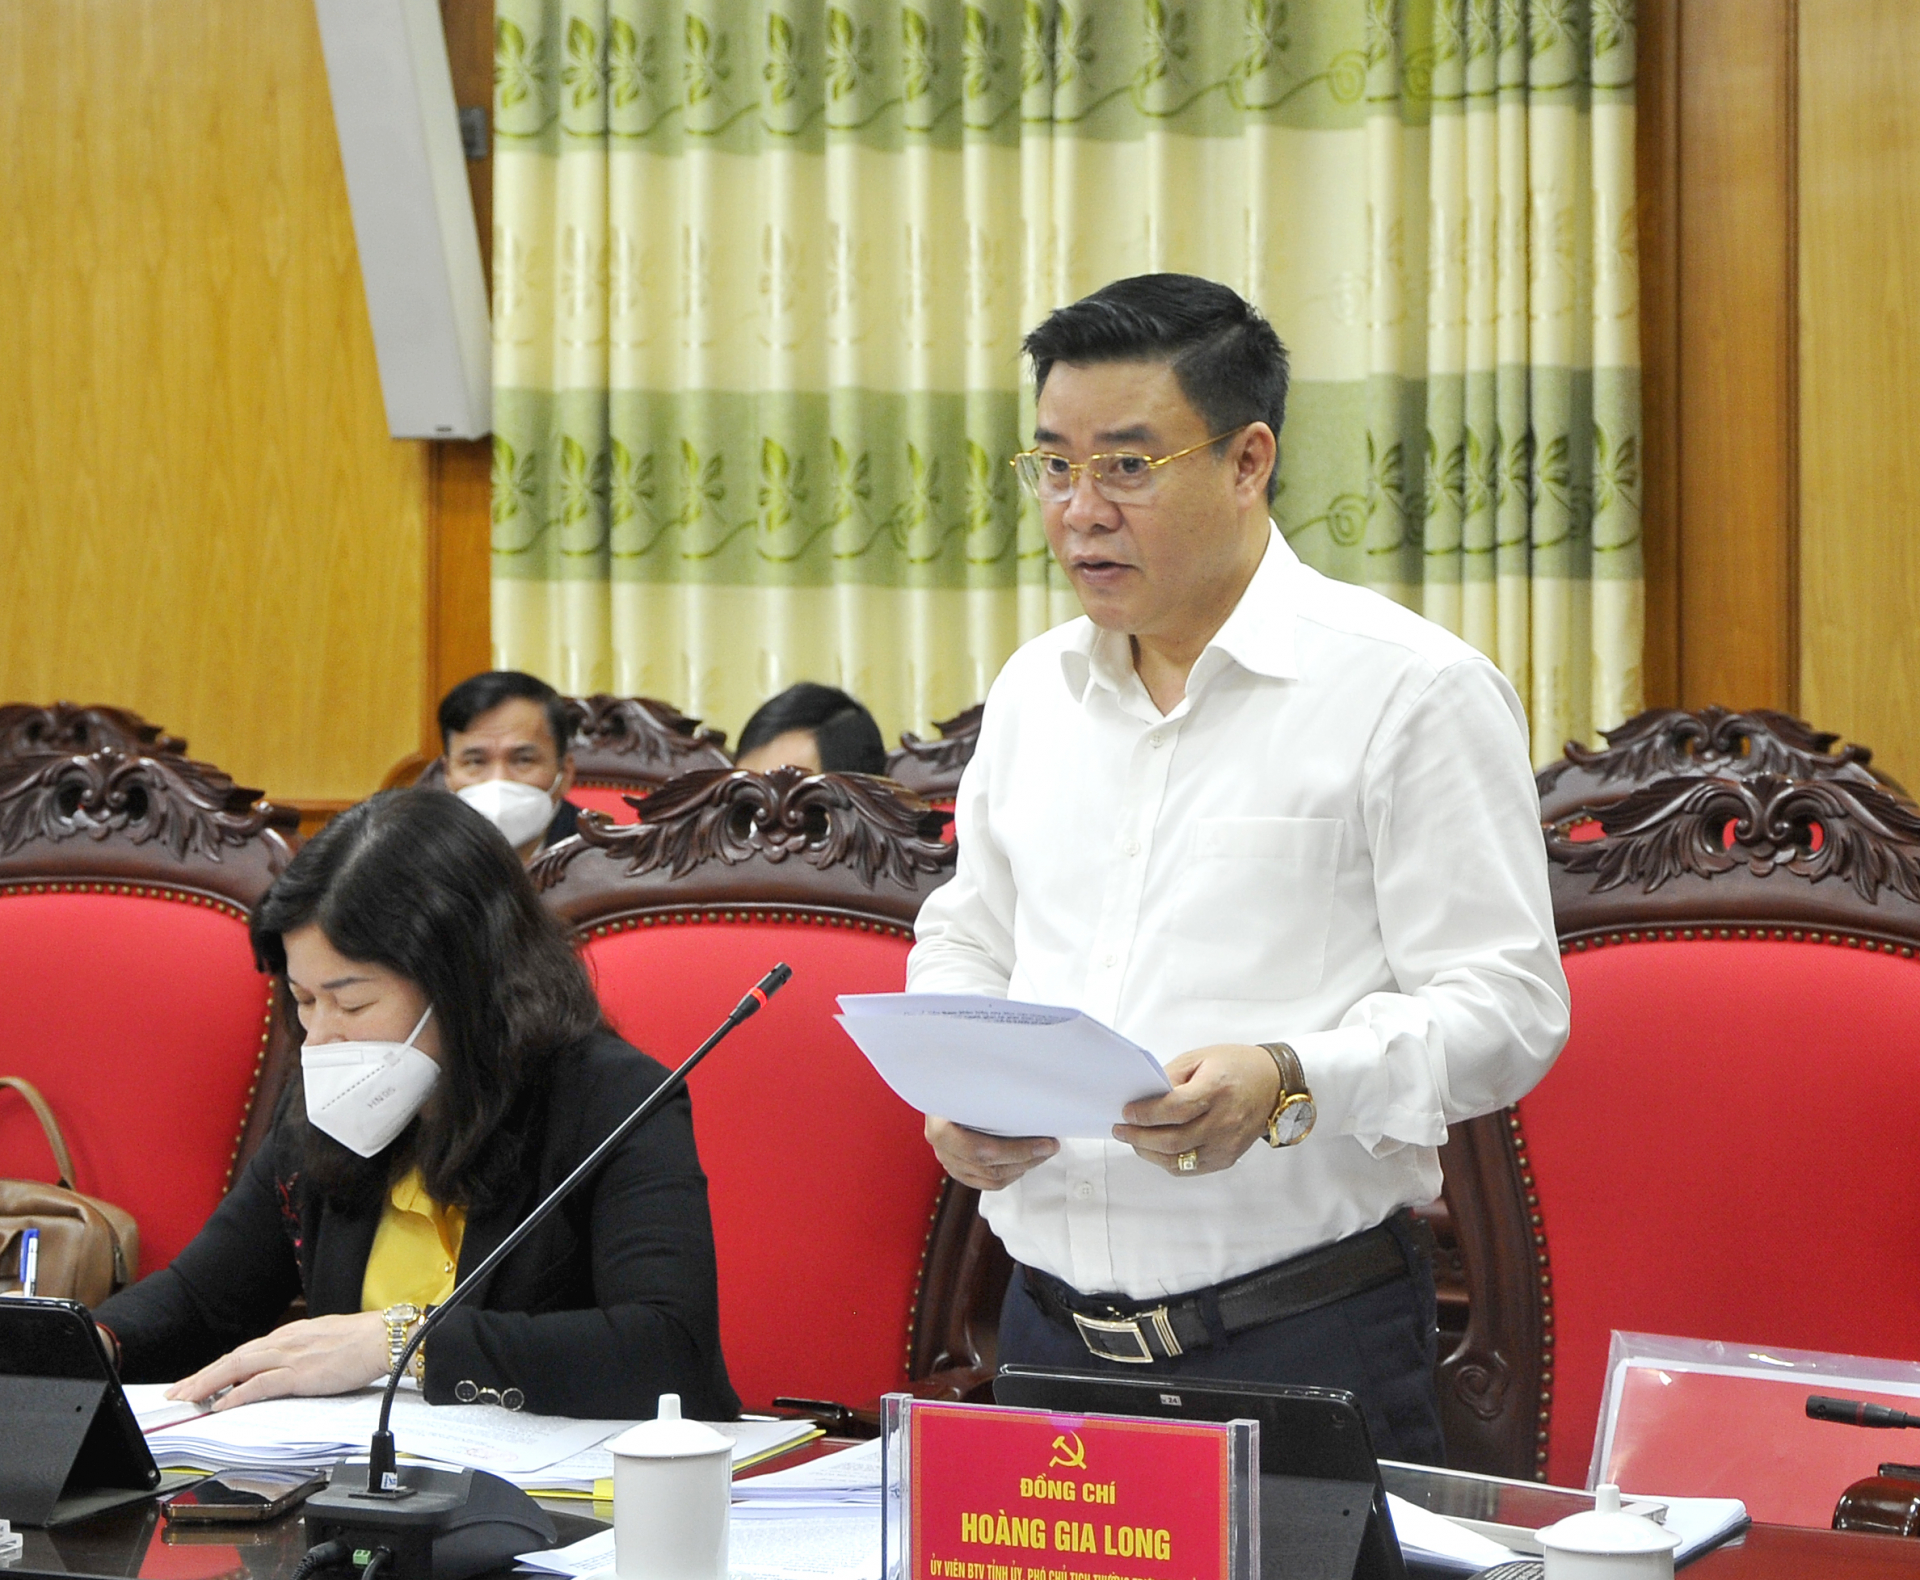 Phó Chủ tịch Thường trực UBND tỉnh Hoàng Gia Long trình bày các tờ trình của Ban cán sự Đảng UBND tỉnh.